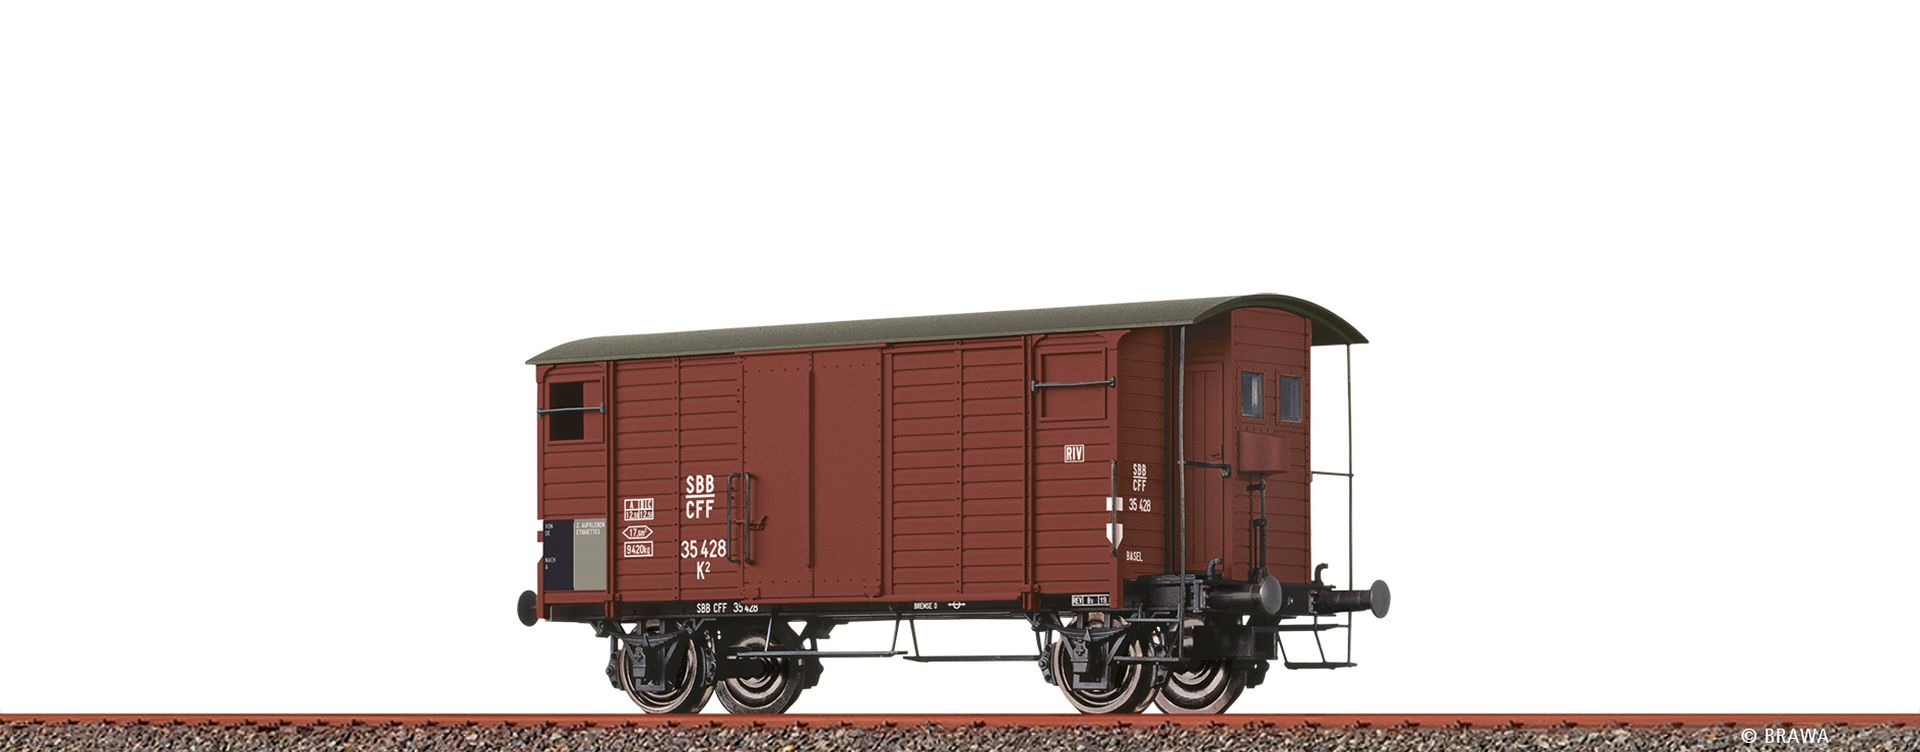 Brawa 67871 - Gedeckter Güterwagen K2, SBB, Ep.III